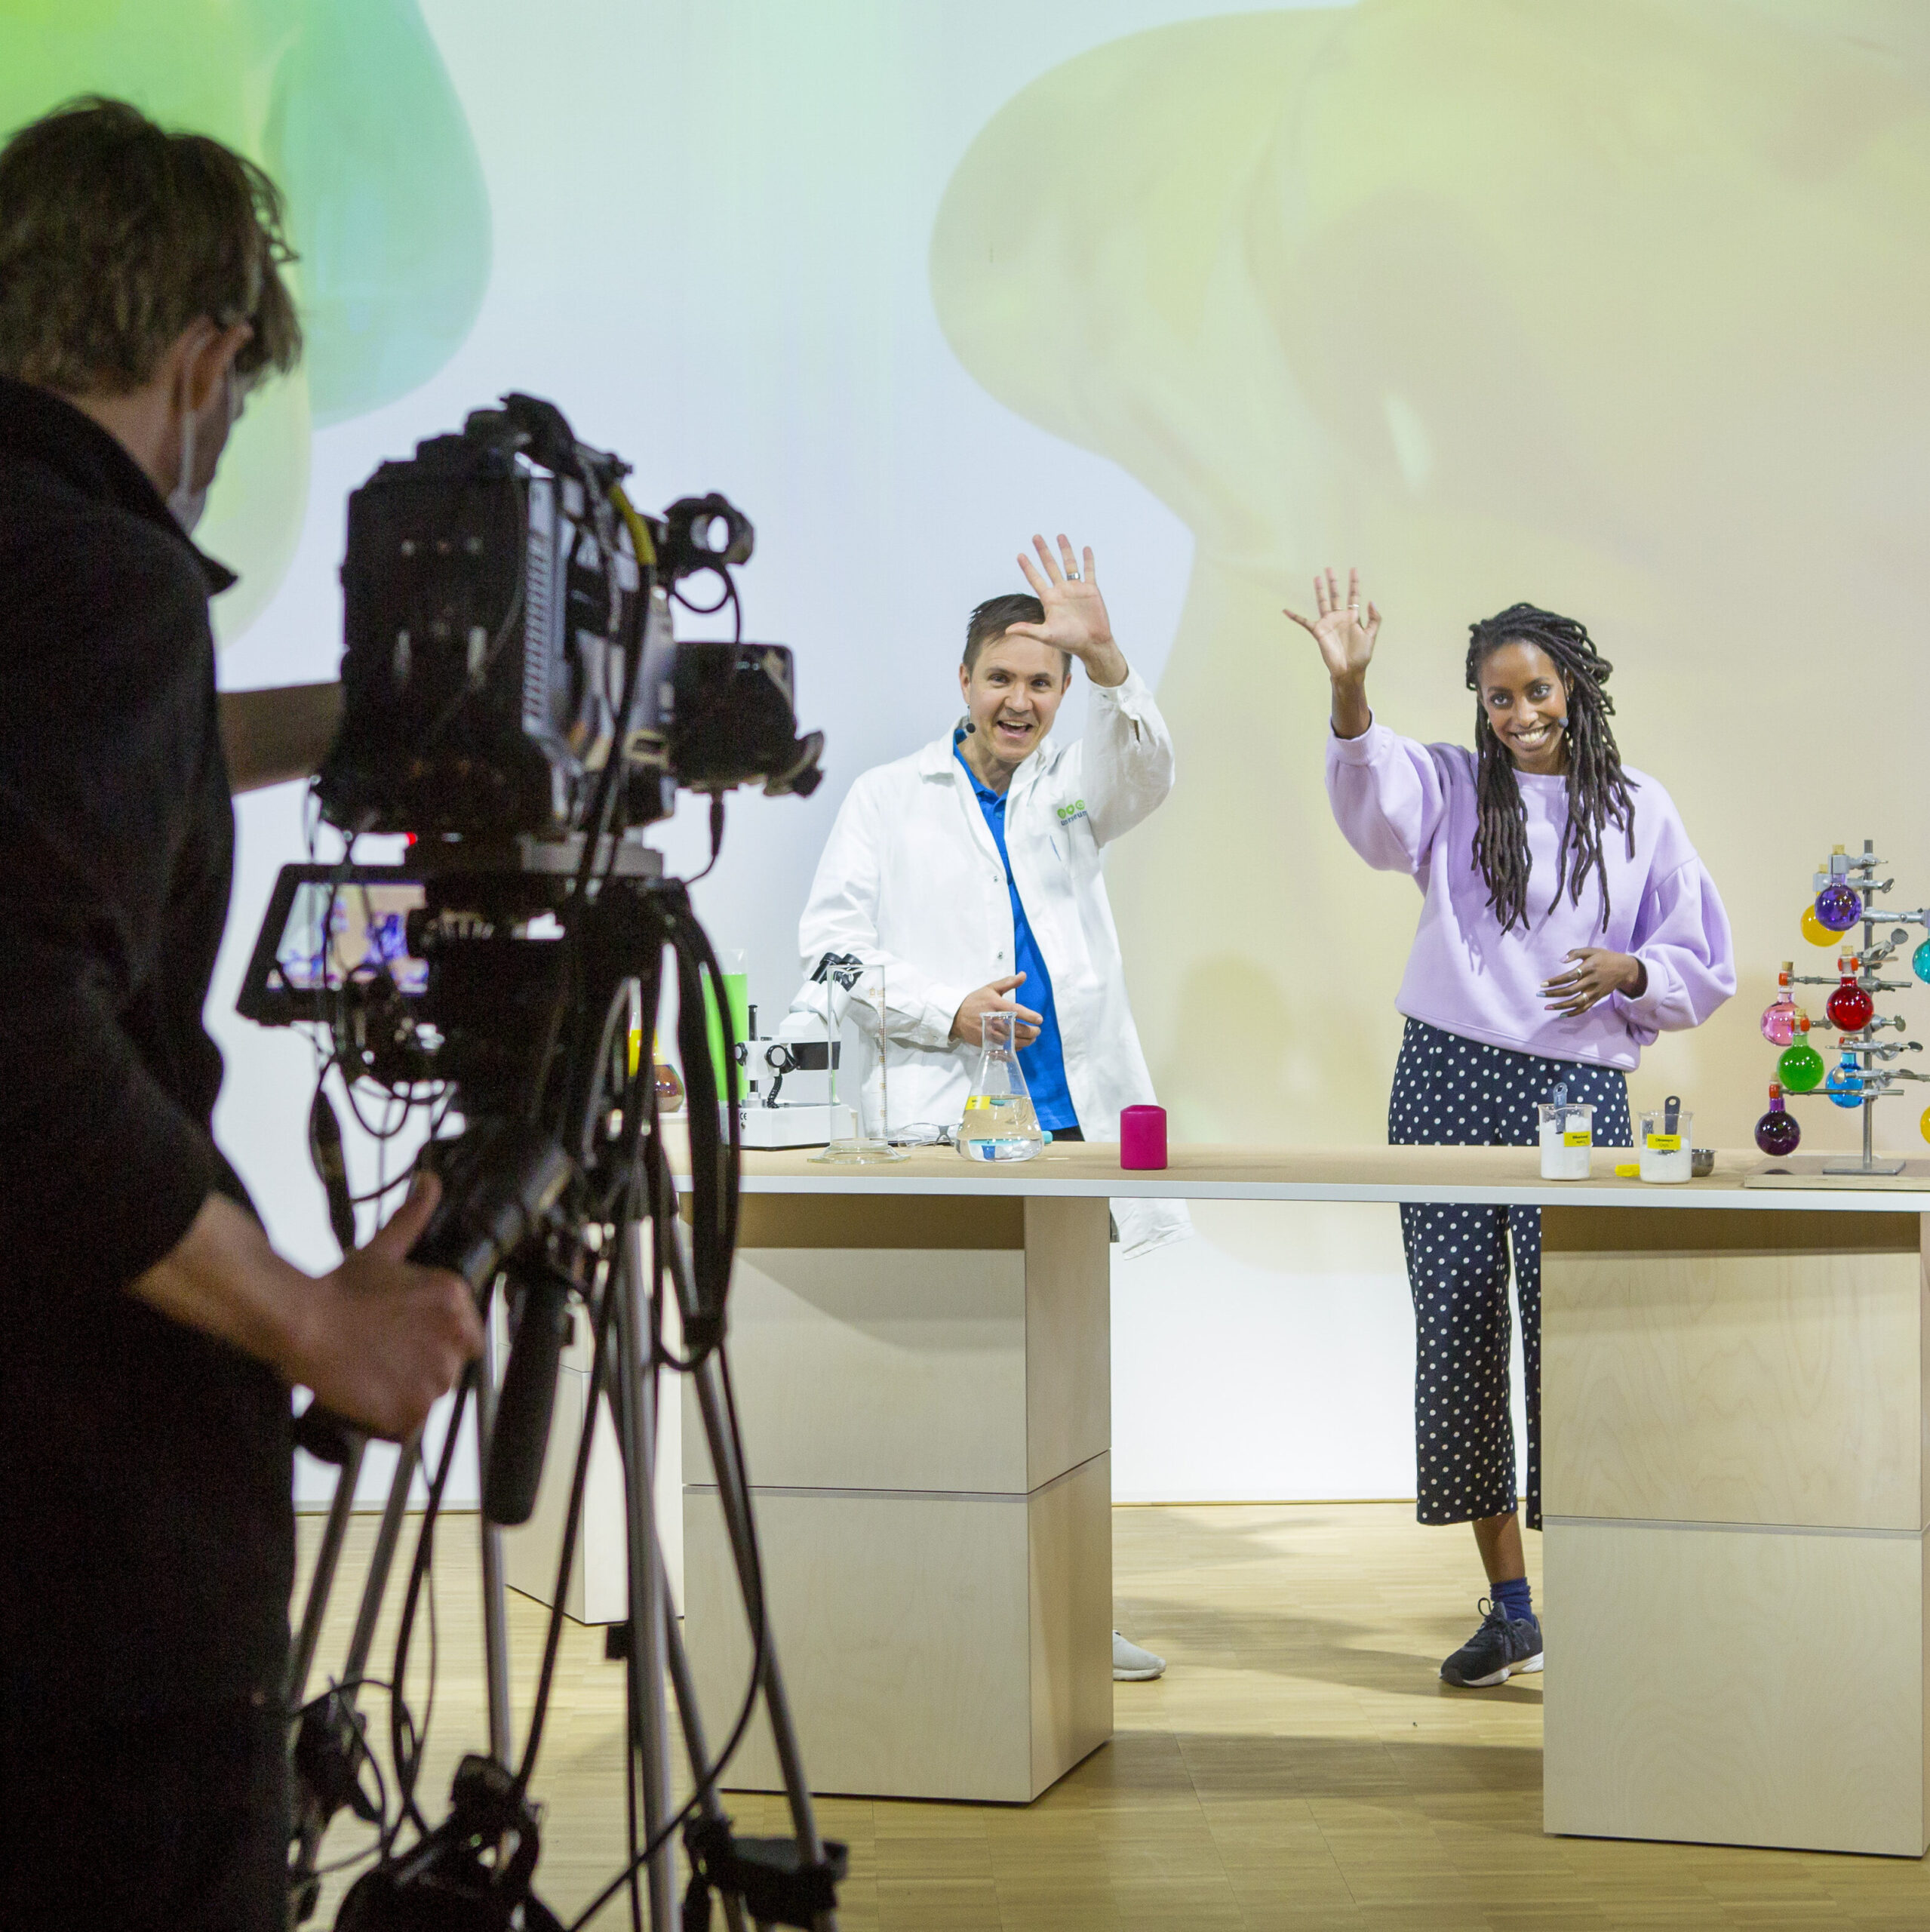 En kameraman står i en studio med en filmkamera riktad mot tre personer, iklädda vita rockar, som vinkar mot kameran, på bordet framför sig har de små flaskor med olikfärgade vätskor